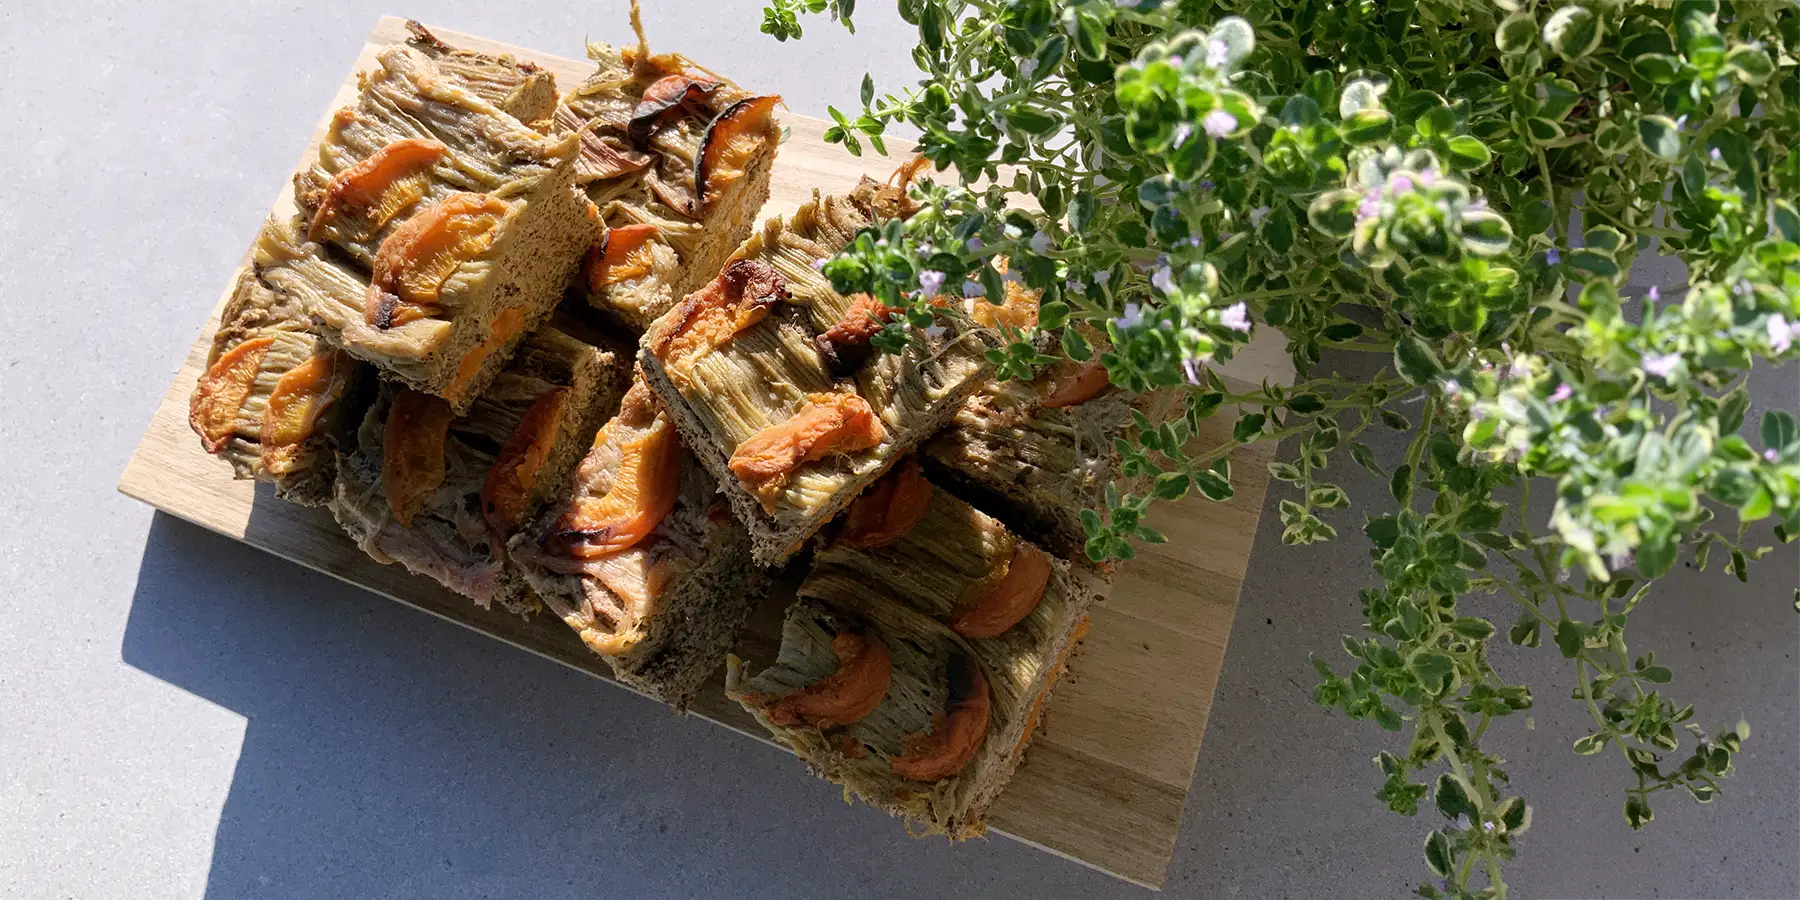 Stücke von einem saftigen Aprikosen-Mohn-Rhabarber-Kuchen unter einem Strauß Zweige & Blumen auf einem Holzbrett in der Sonne.